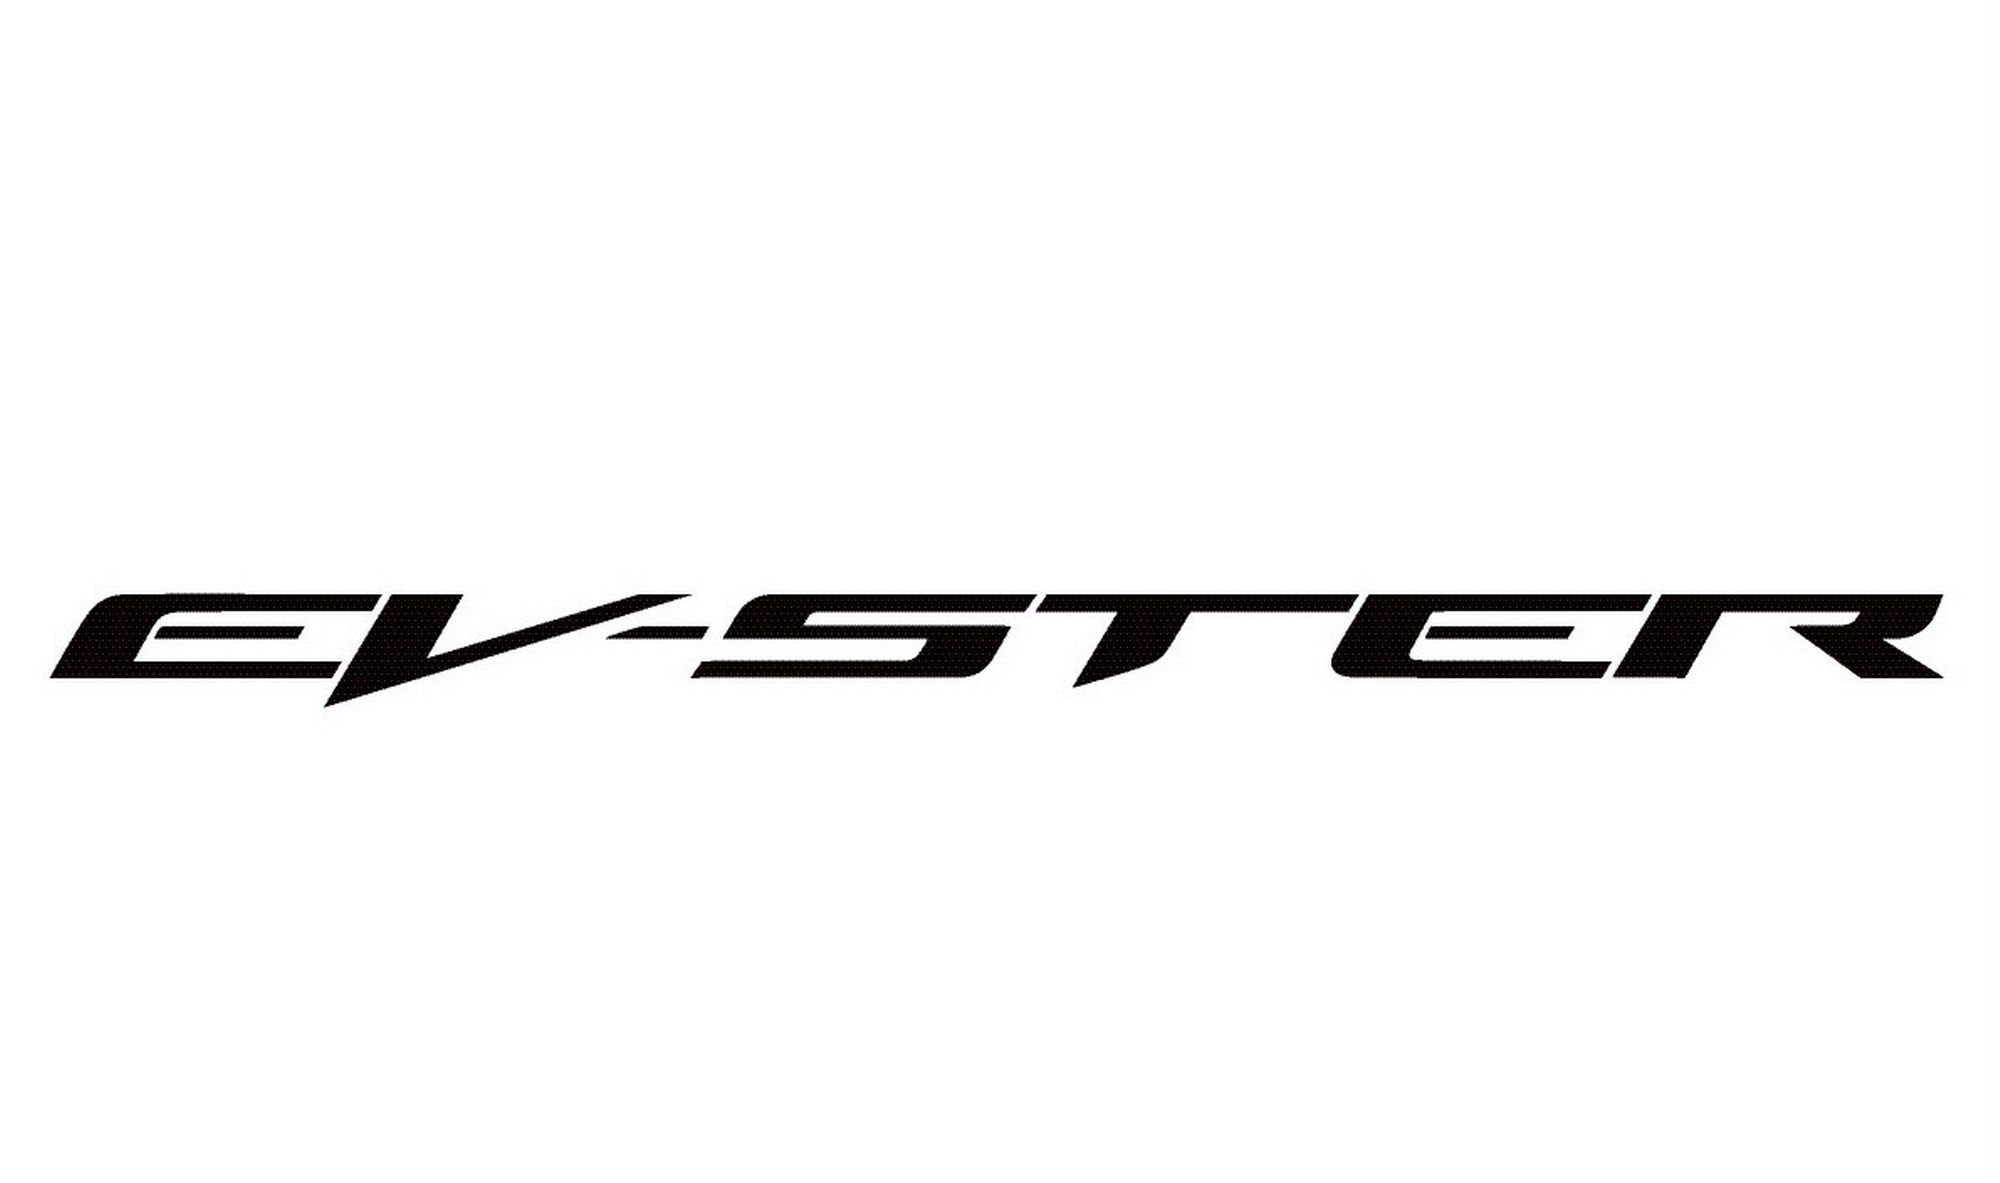 2011 Honda EV-STER Concept